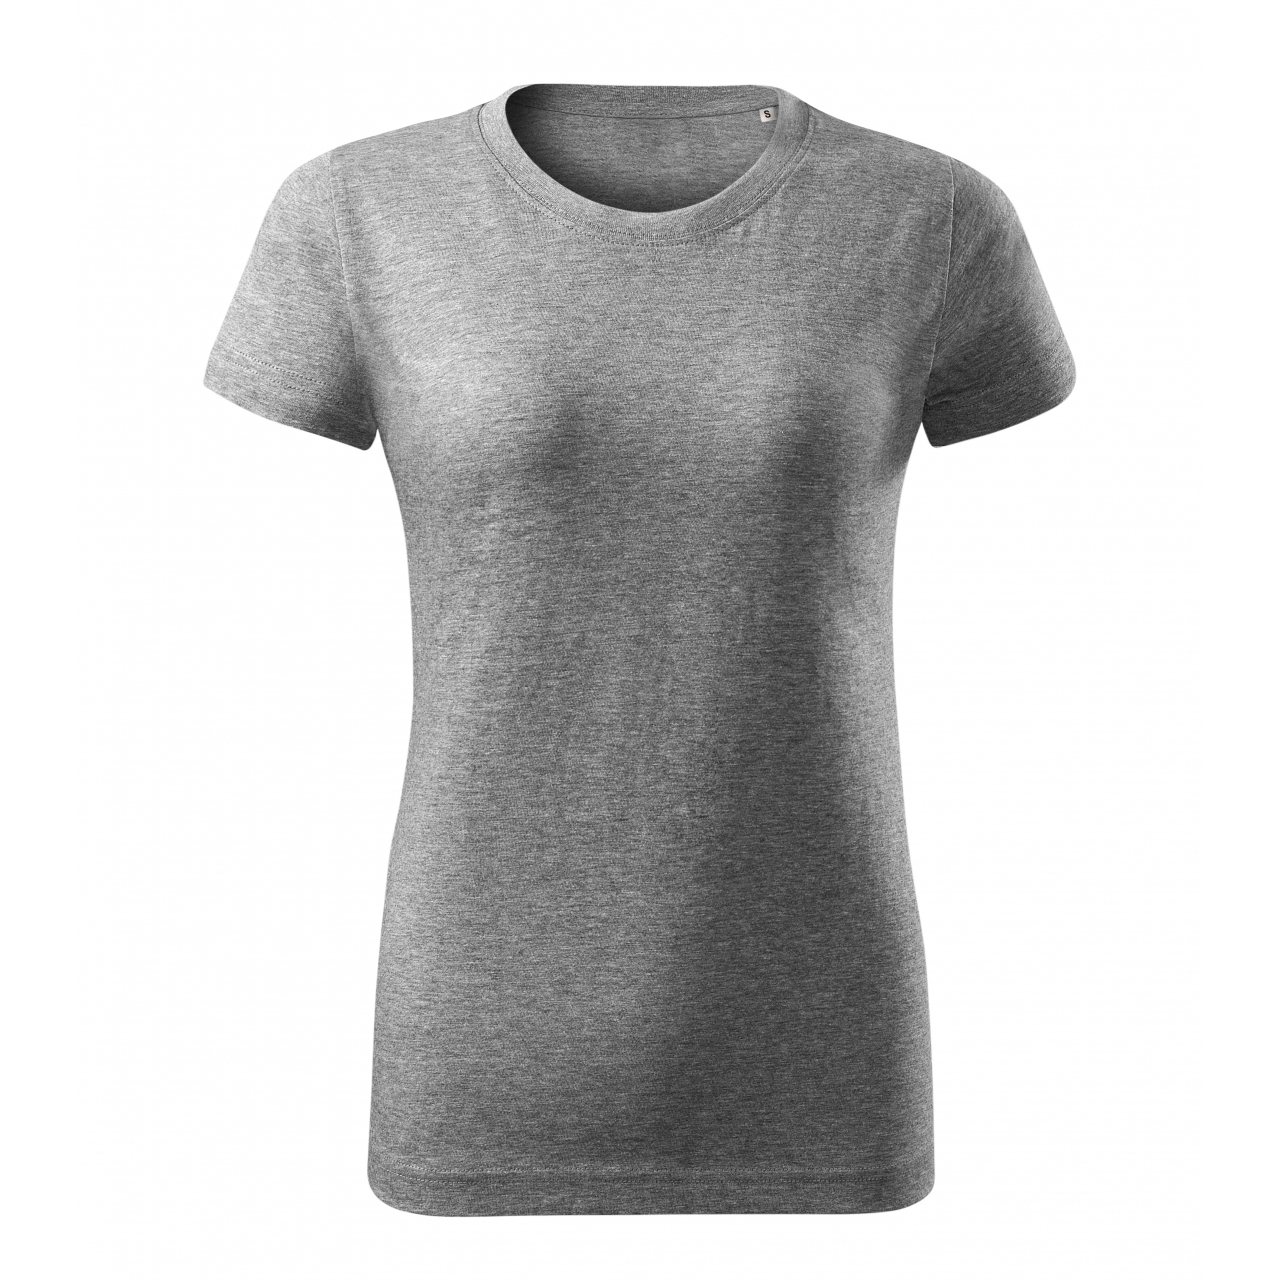 Tričko dámské Malfini Basic Free - šedé, L